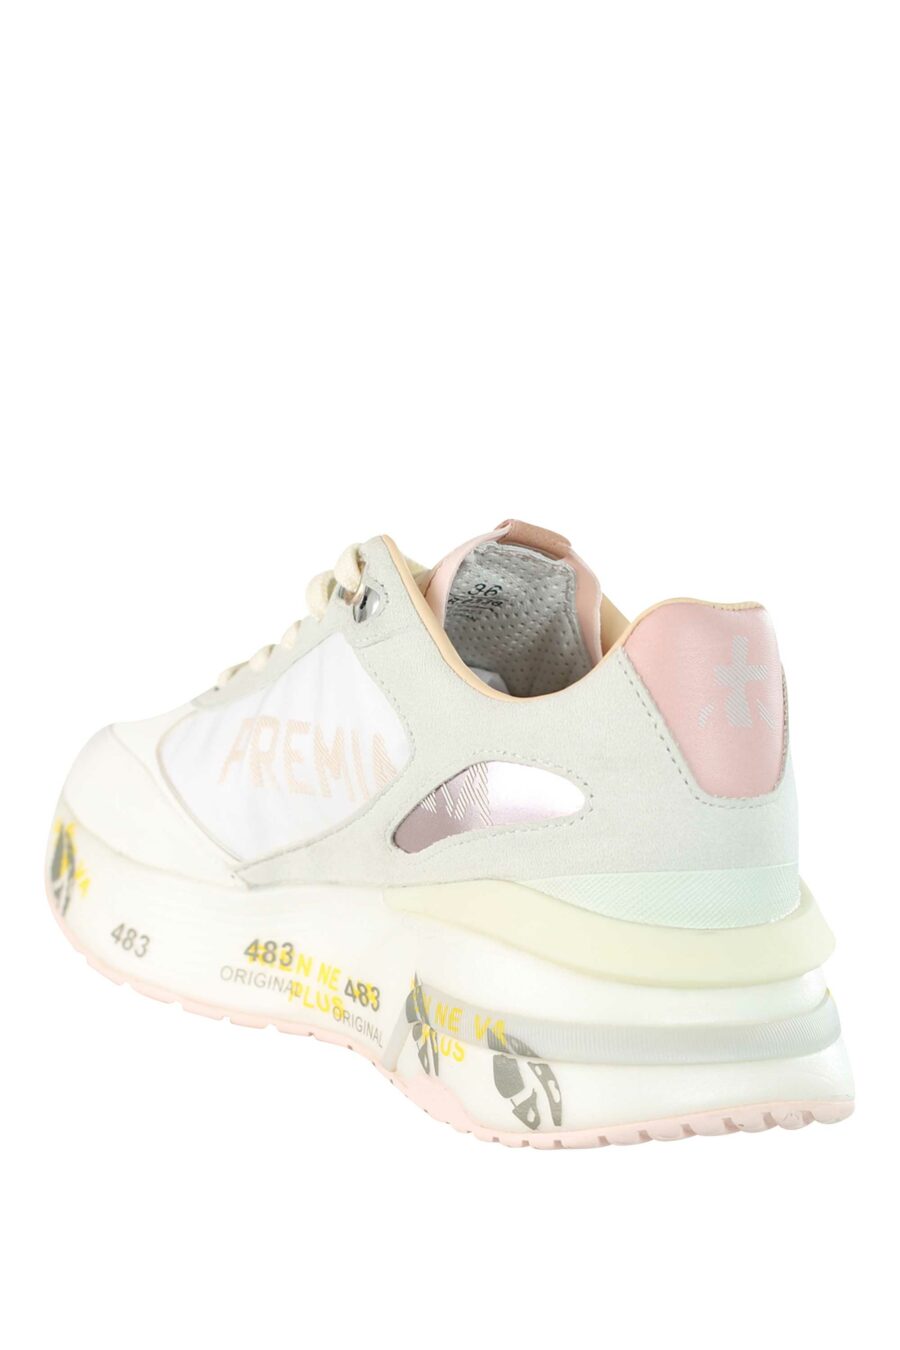 Zapatillas blancas con rosa y gris "moe run-d 6338" - 8058326253473 4